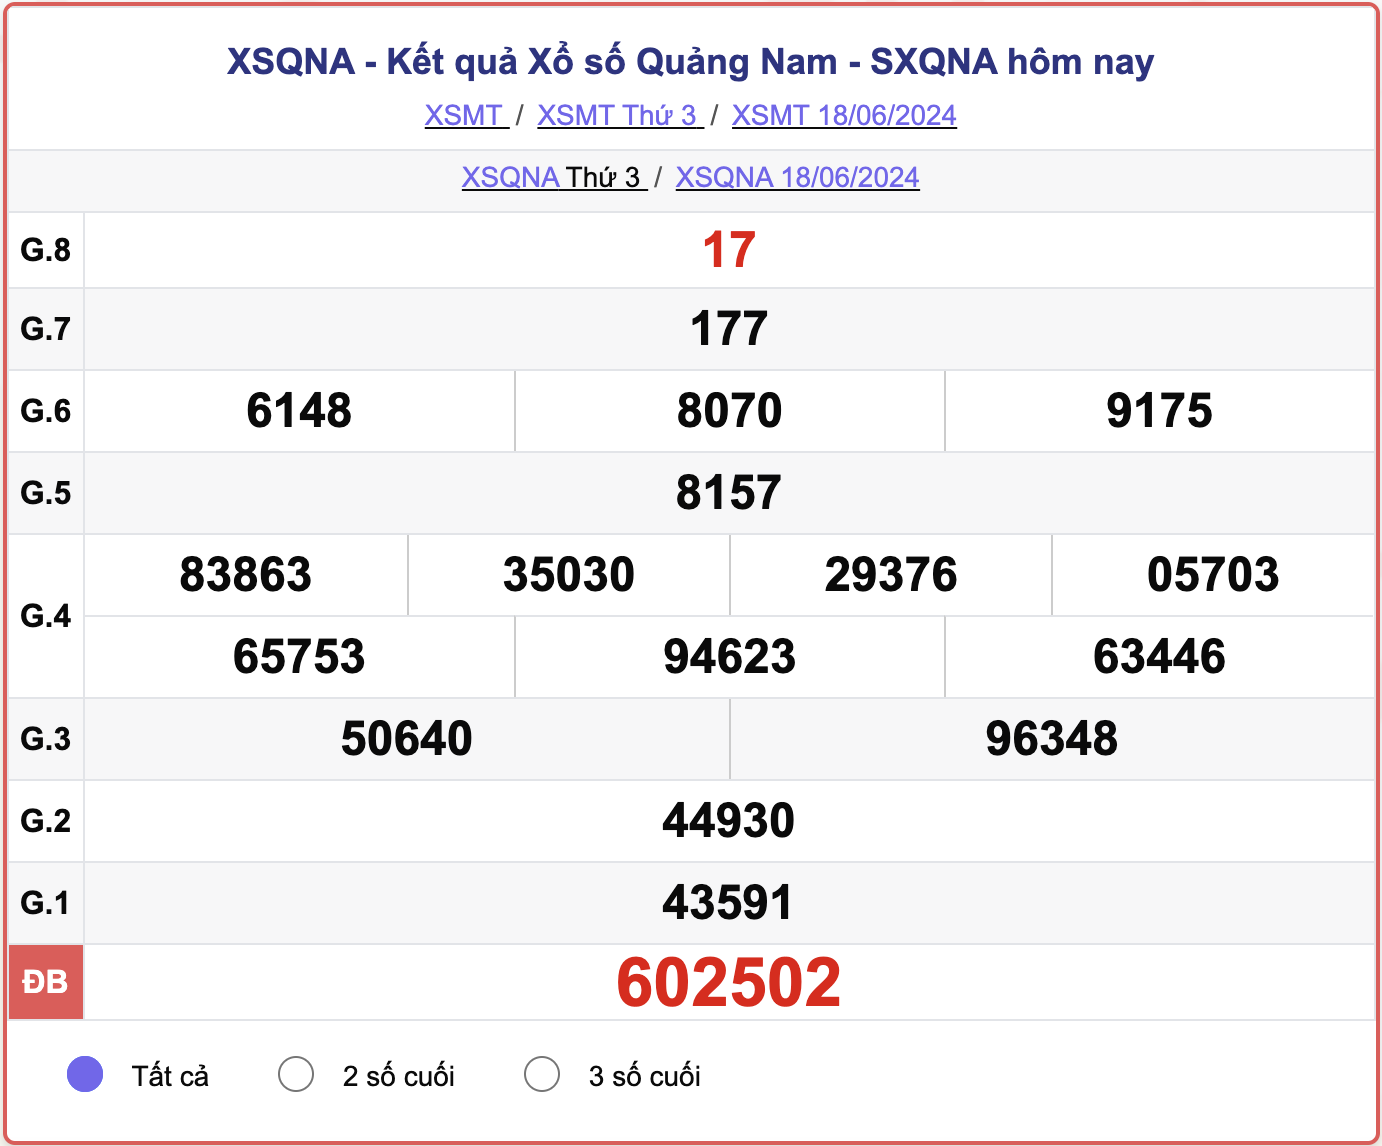 XSQNA 18/6, kết quả xổ số Quảng Nam hôm nay 18/6/2024.